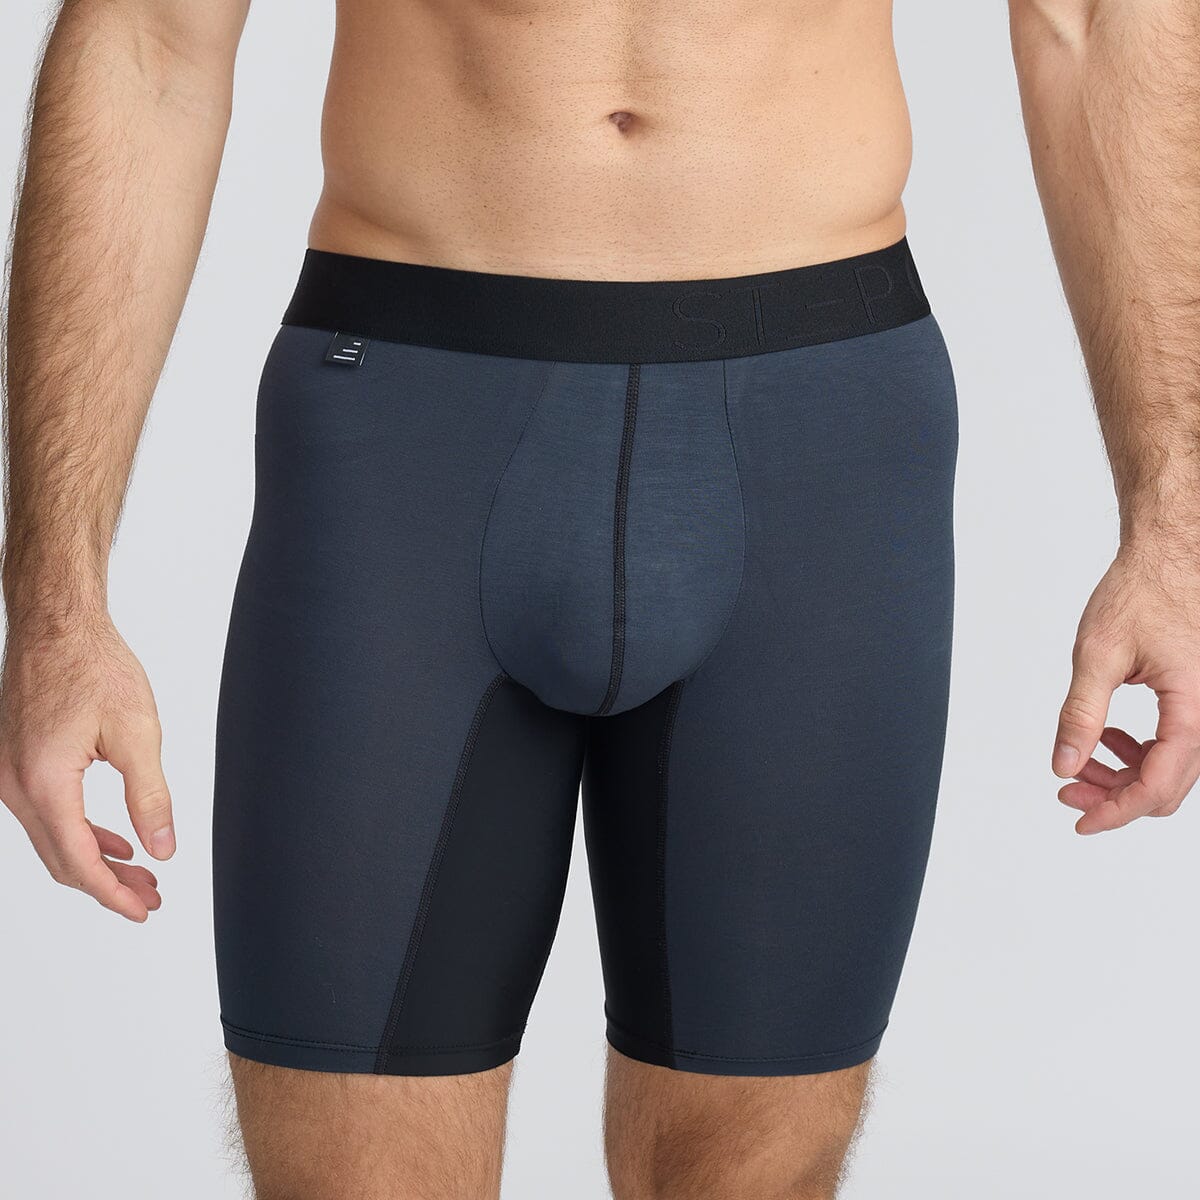 Men's Bamboo Underwear Sport Boxers in grey